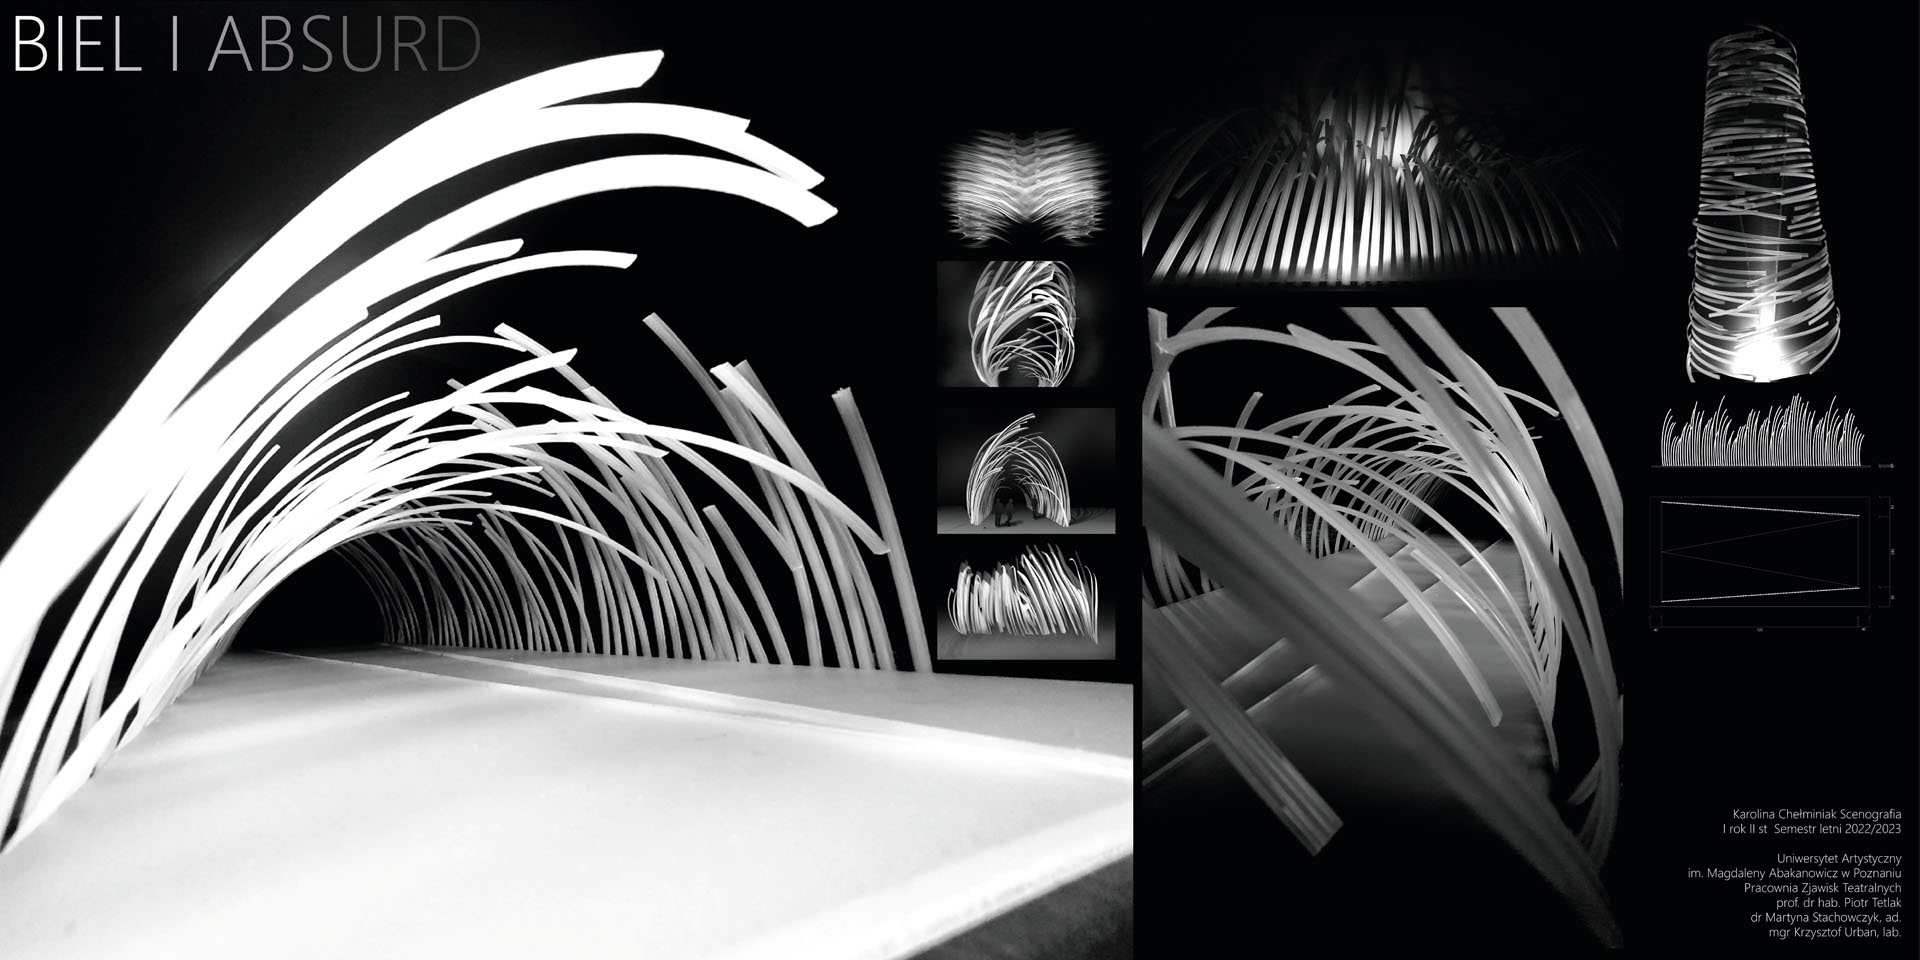 Pozioma plansza z czarno białymi zdjęciami, dwa duże i sześć małych zdjęć projektu scenografi, wydłużona scena wzdłuż której ustawione są gęsto, cieńkie, schodzące się do osi białe łuki o różnych długościach. 